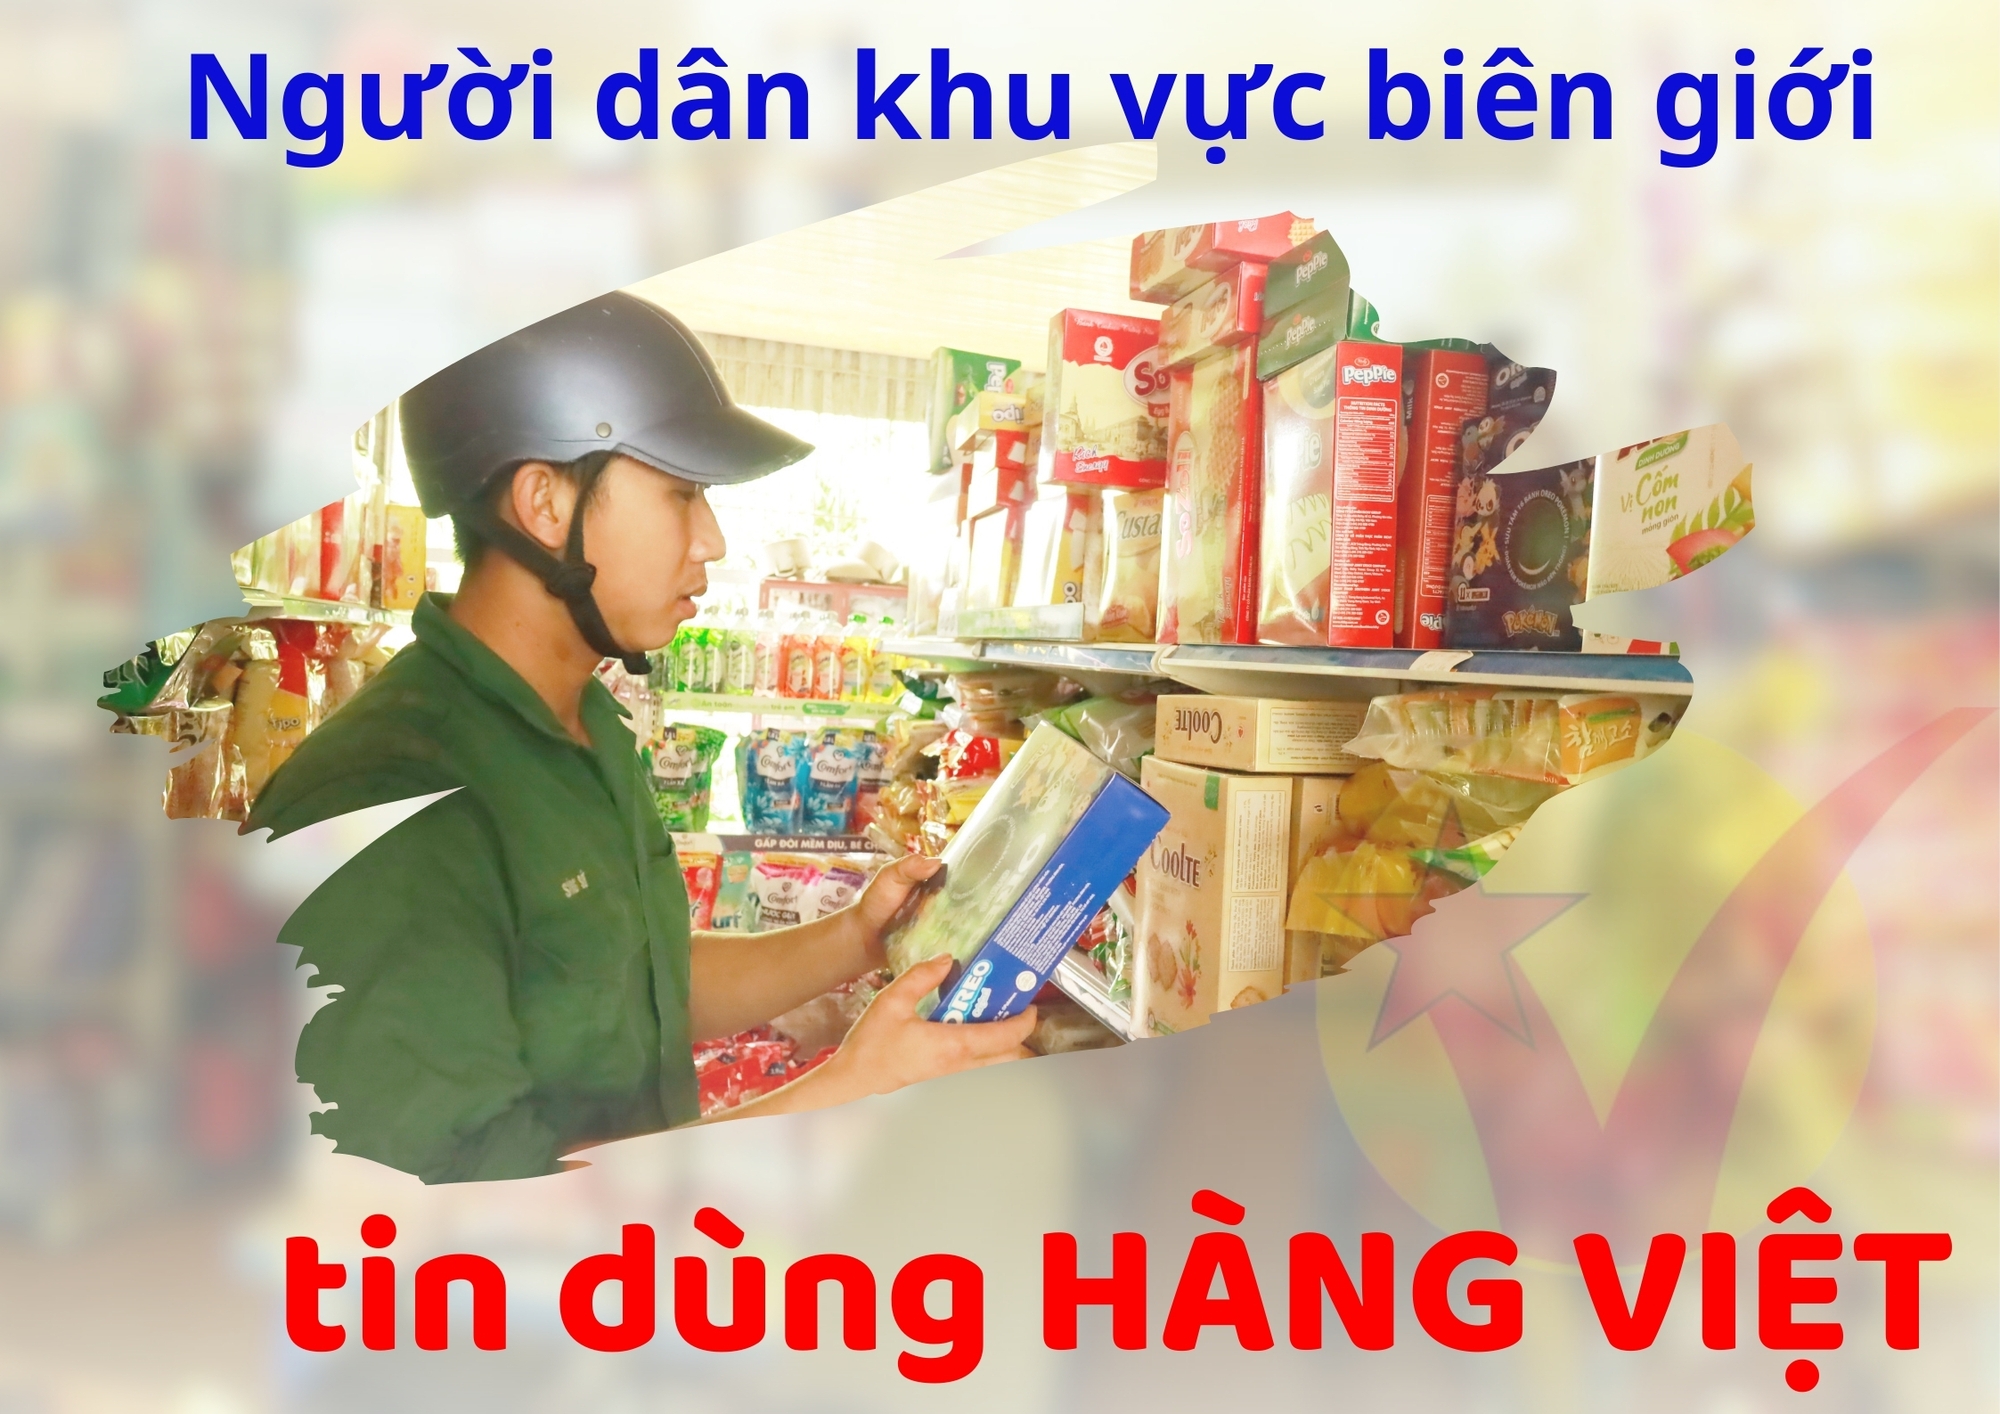 Người dân khu vực biên giới tin dùng hàng Việt